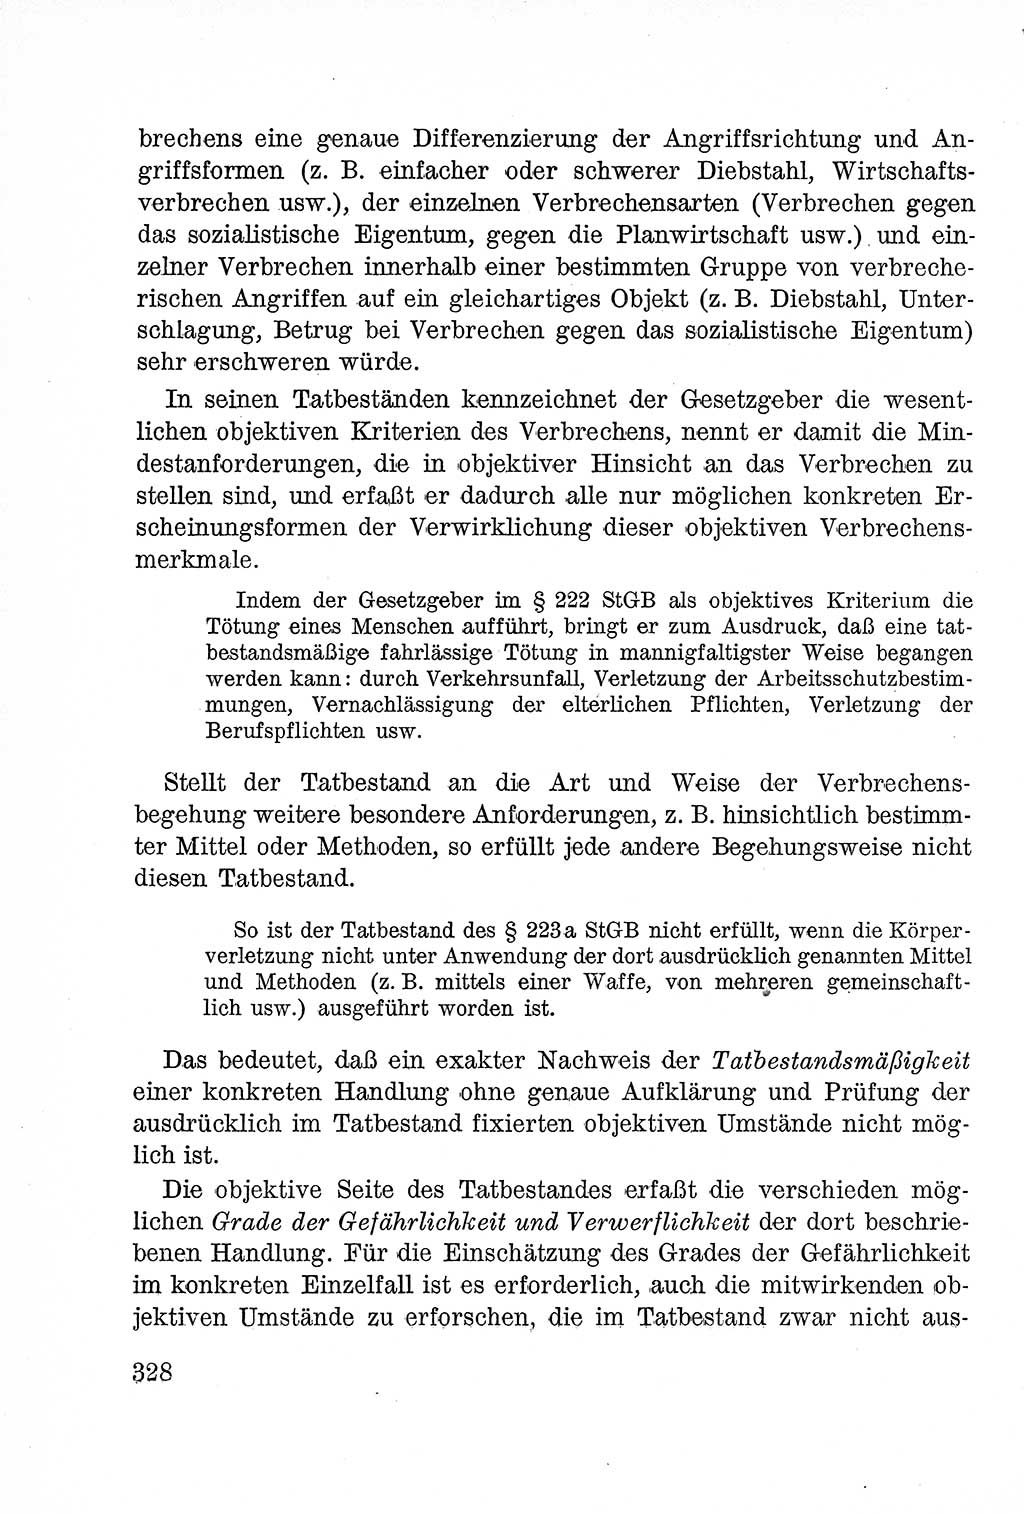 Lehrbuch des Strafrechts der Deutschen Demokratischen Republik (DDR), Allgemeiner Teil 1957, Seite 328 (Lb. Strafr. DDR AT 1957, S. 328)